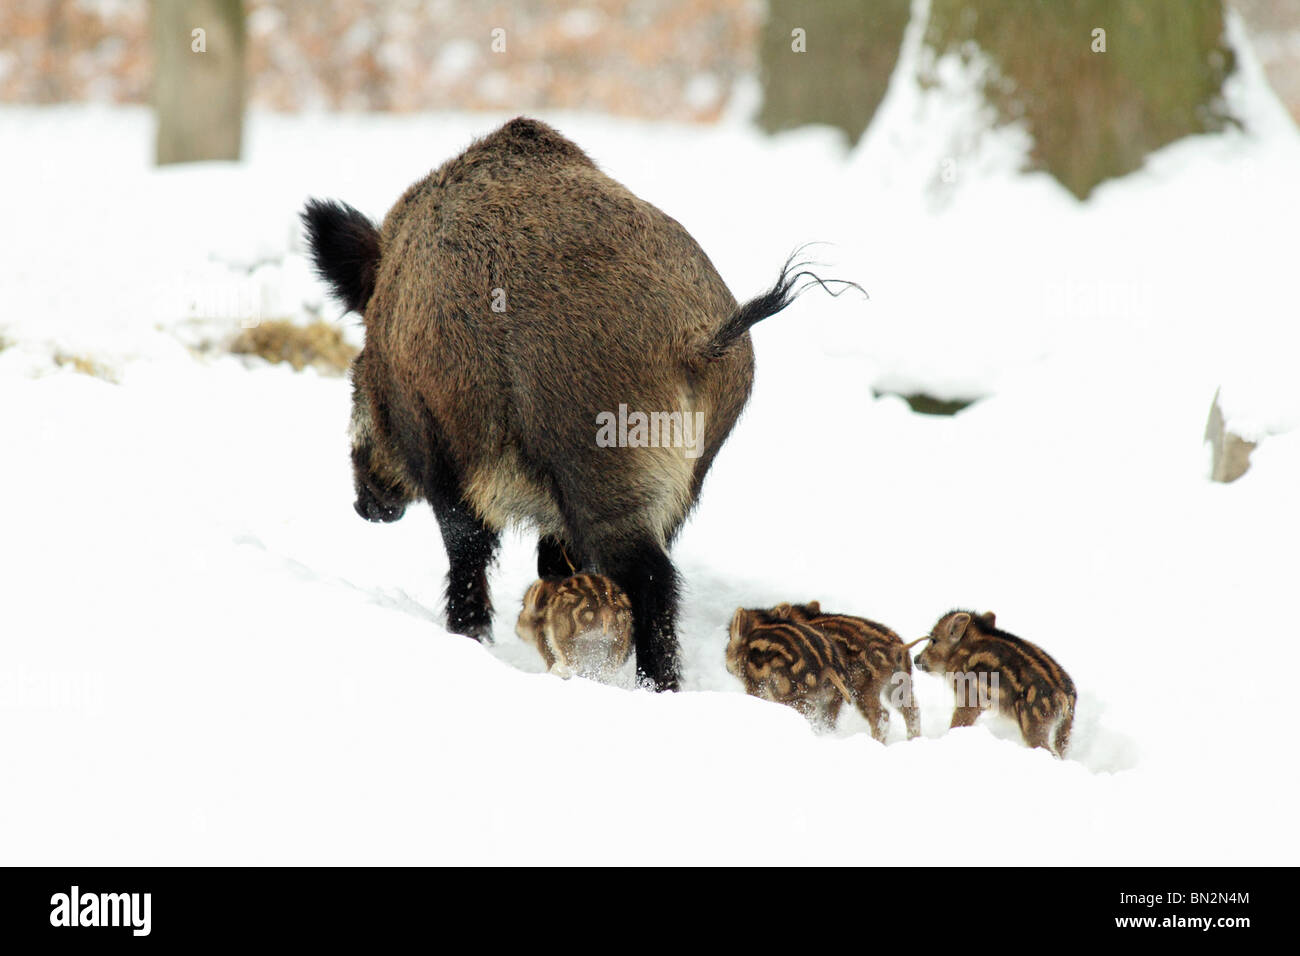 Européen du porc ou sanglier (Sus scrofa), SOW, menant ses quatre porcelets si forêt couverte de neige, hiver, Allemagne Banque D'Images